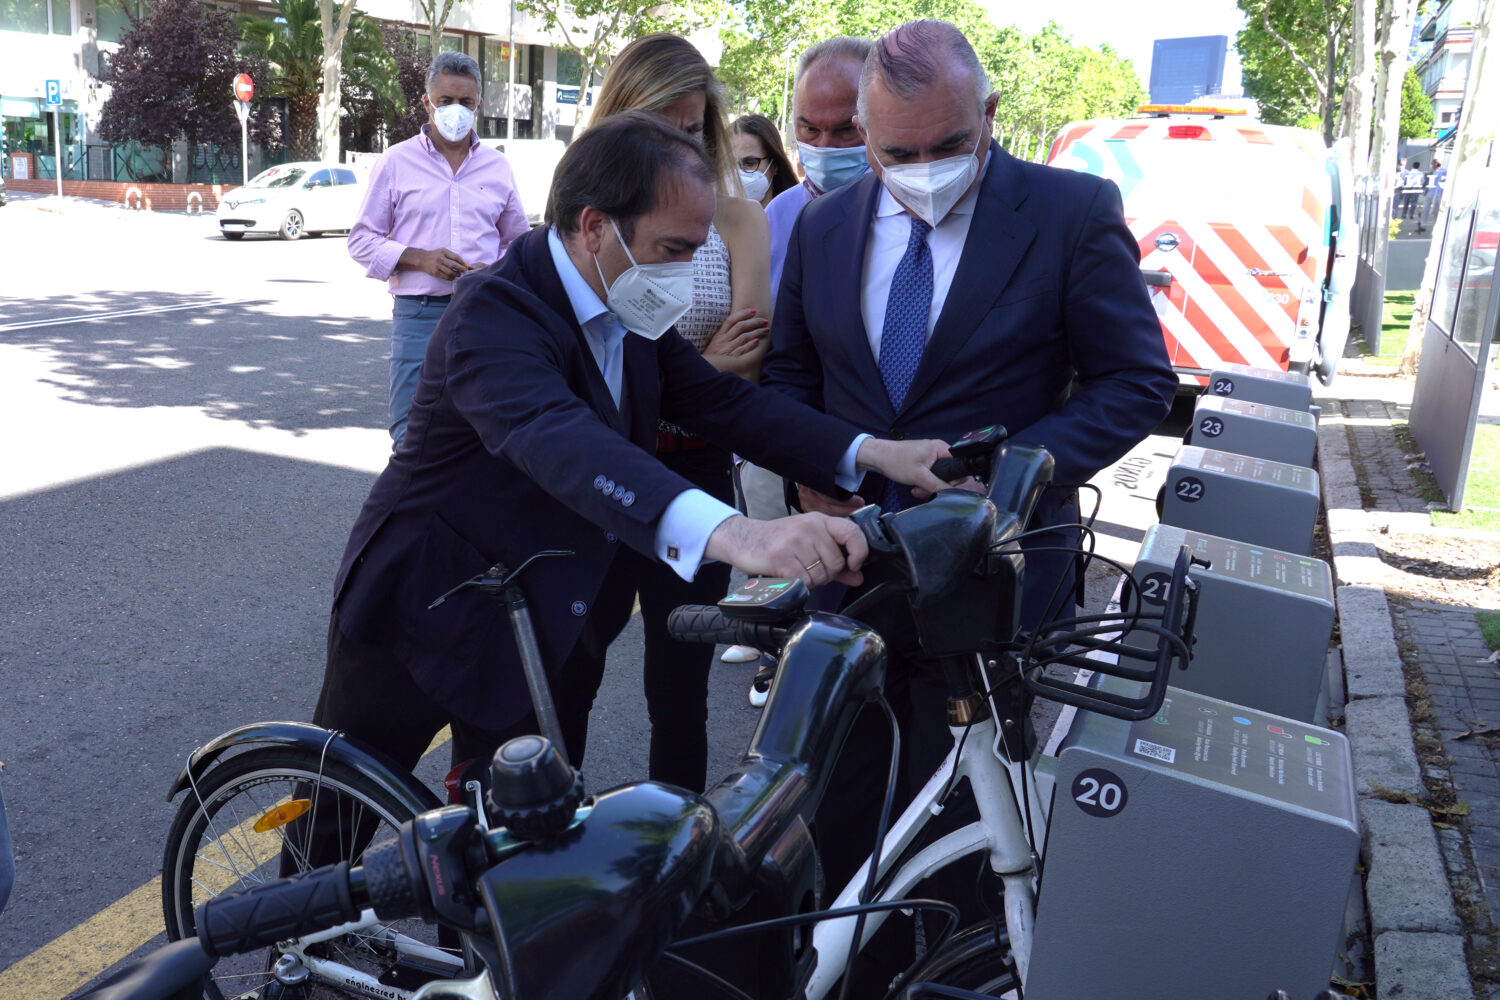 BiciMAD incorpora nuevos talleres móviles para el mantenimiento de estaciones y bicicletas